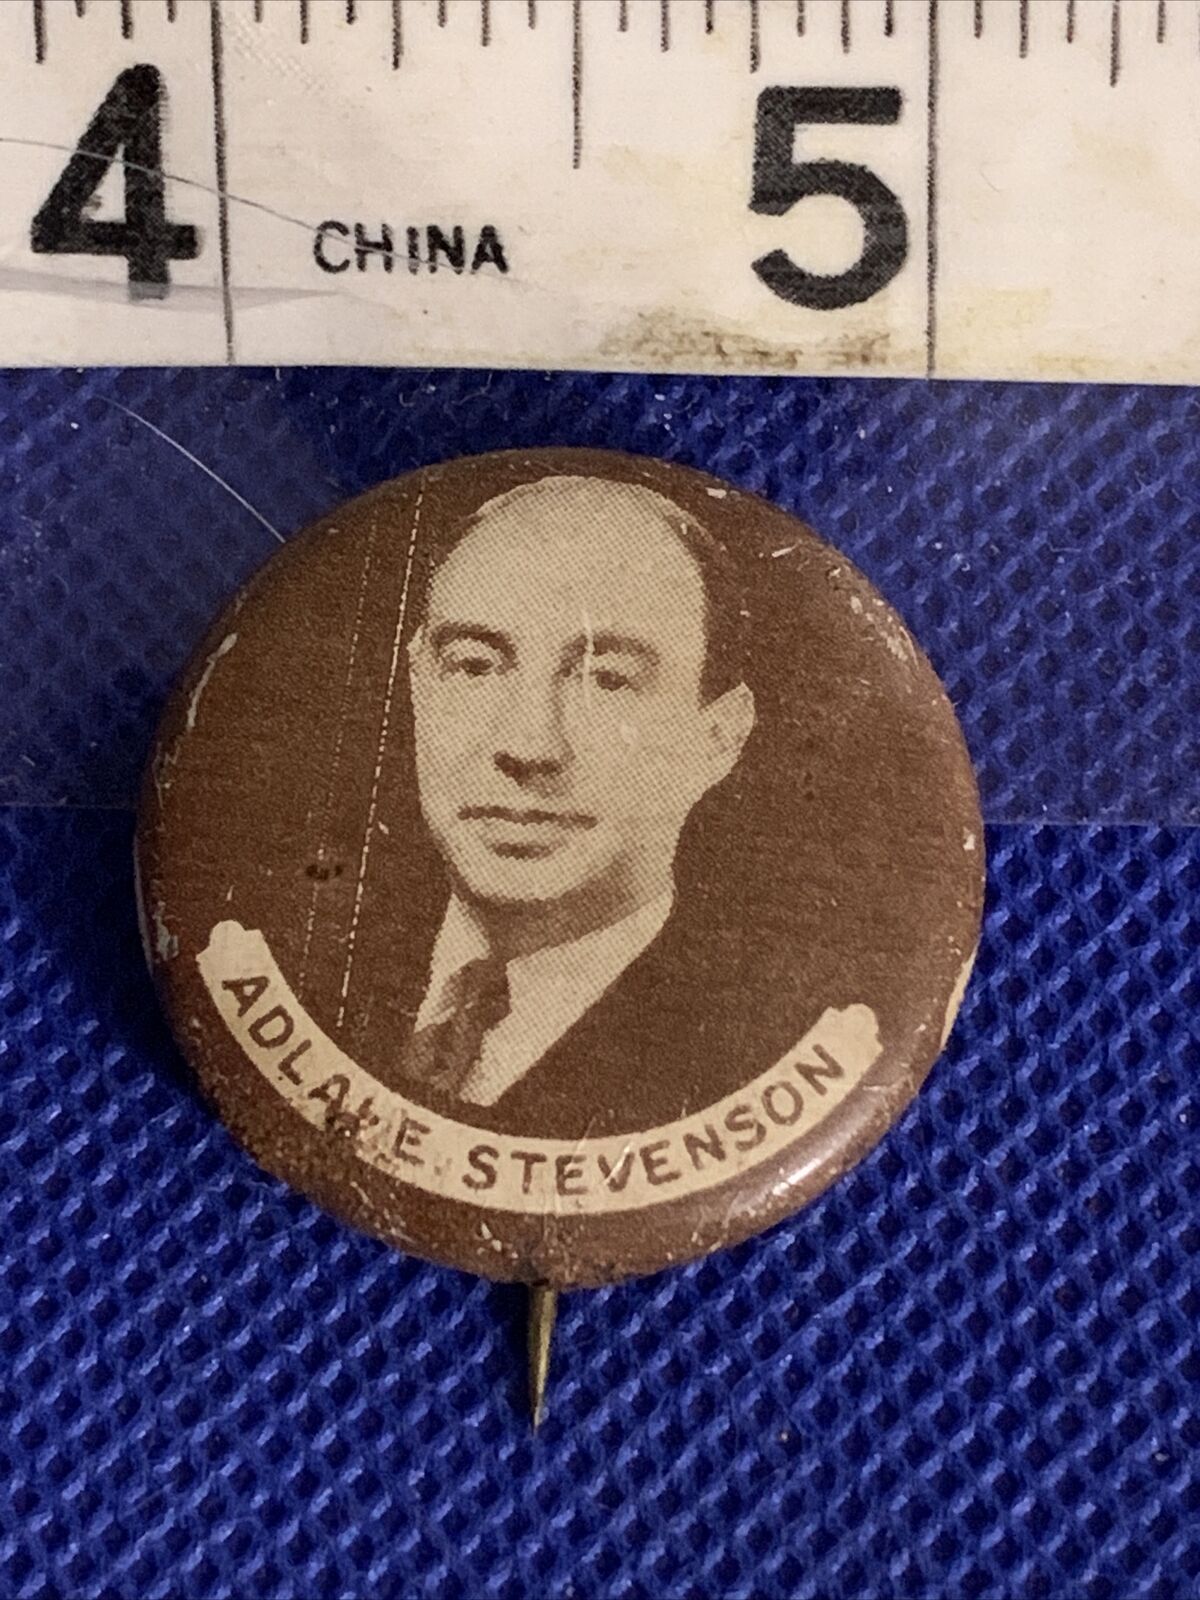 Adlai Stevenson 1952 campaign pin button political